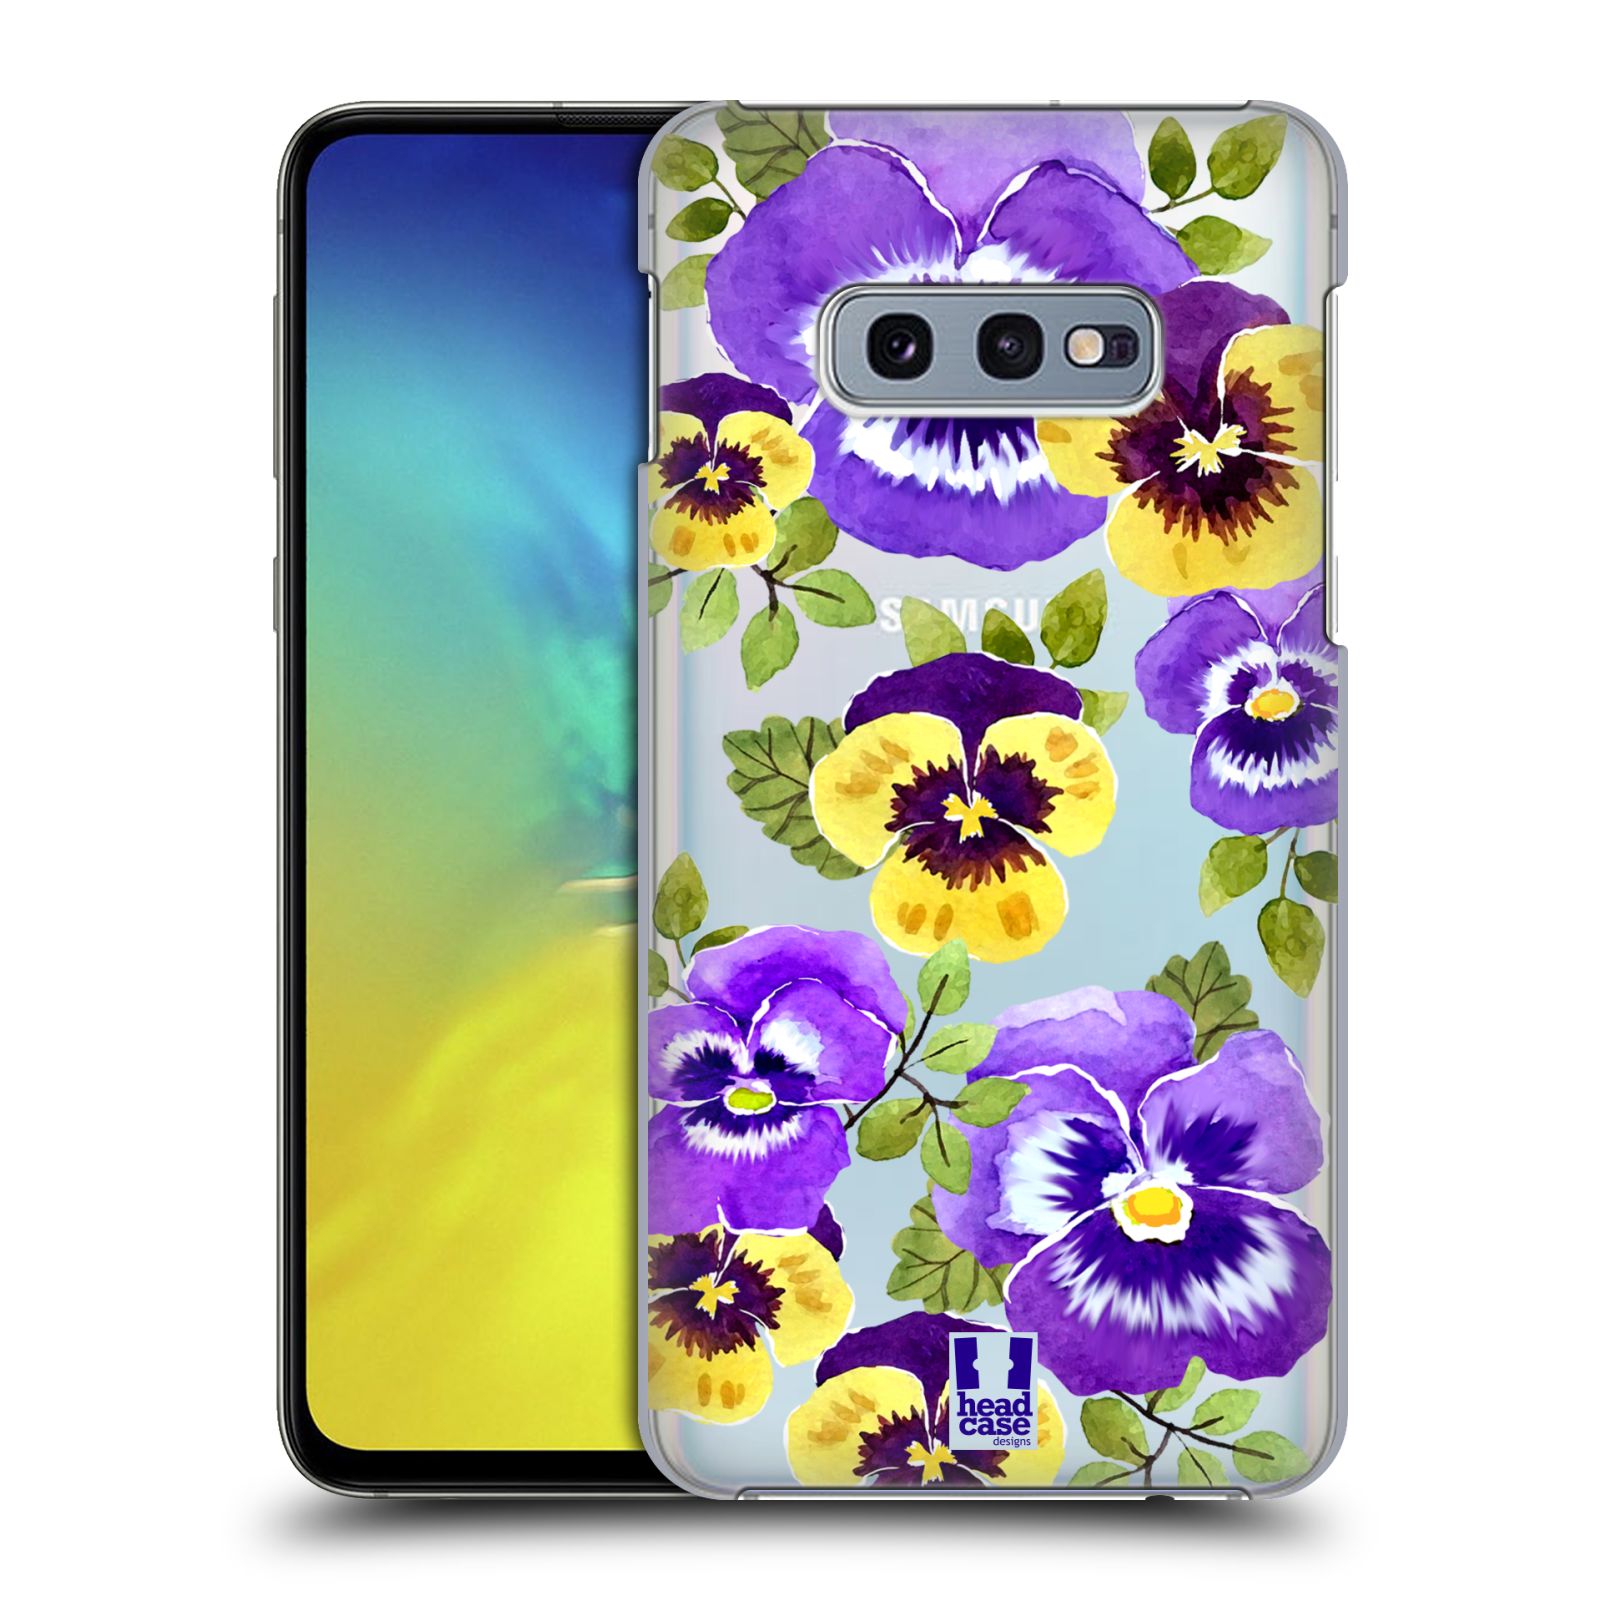 Pouzdro na mobil Samsung Galaxy S10e - HEAD CASE - Maceška fialová barva